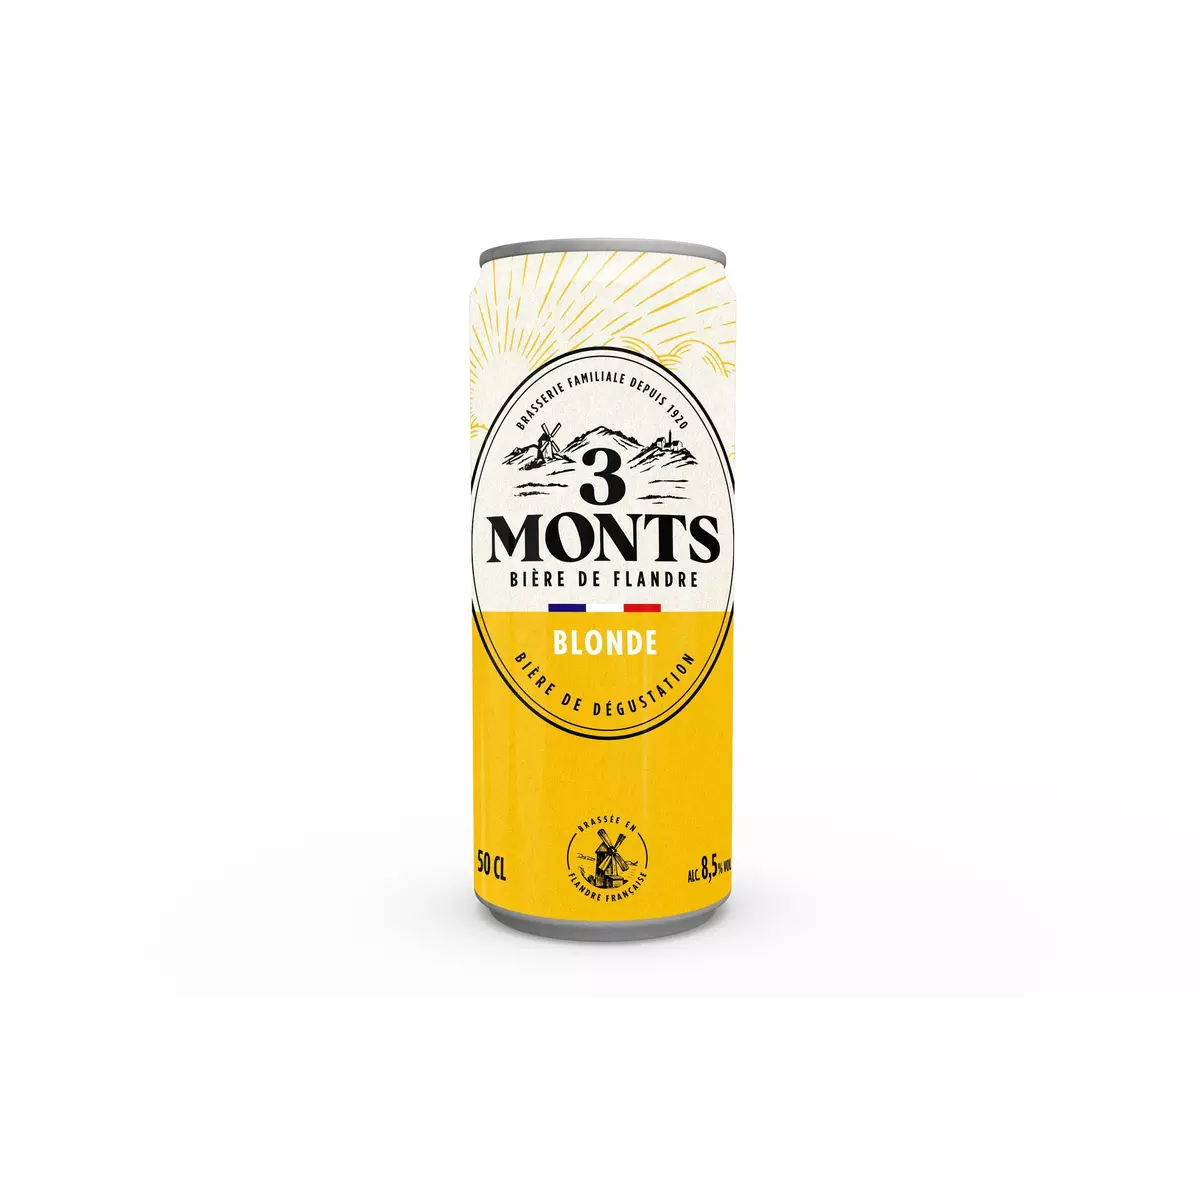 3 MONTS Bière blonde 8.5% boîte 50cl